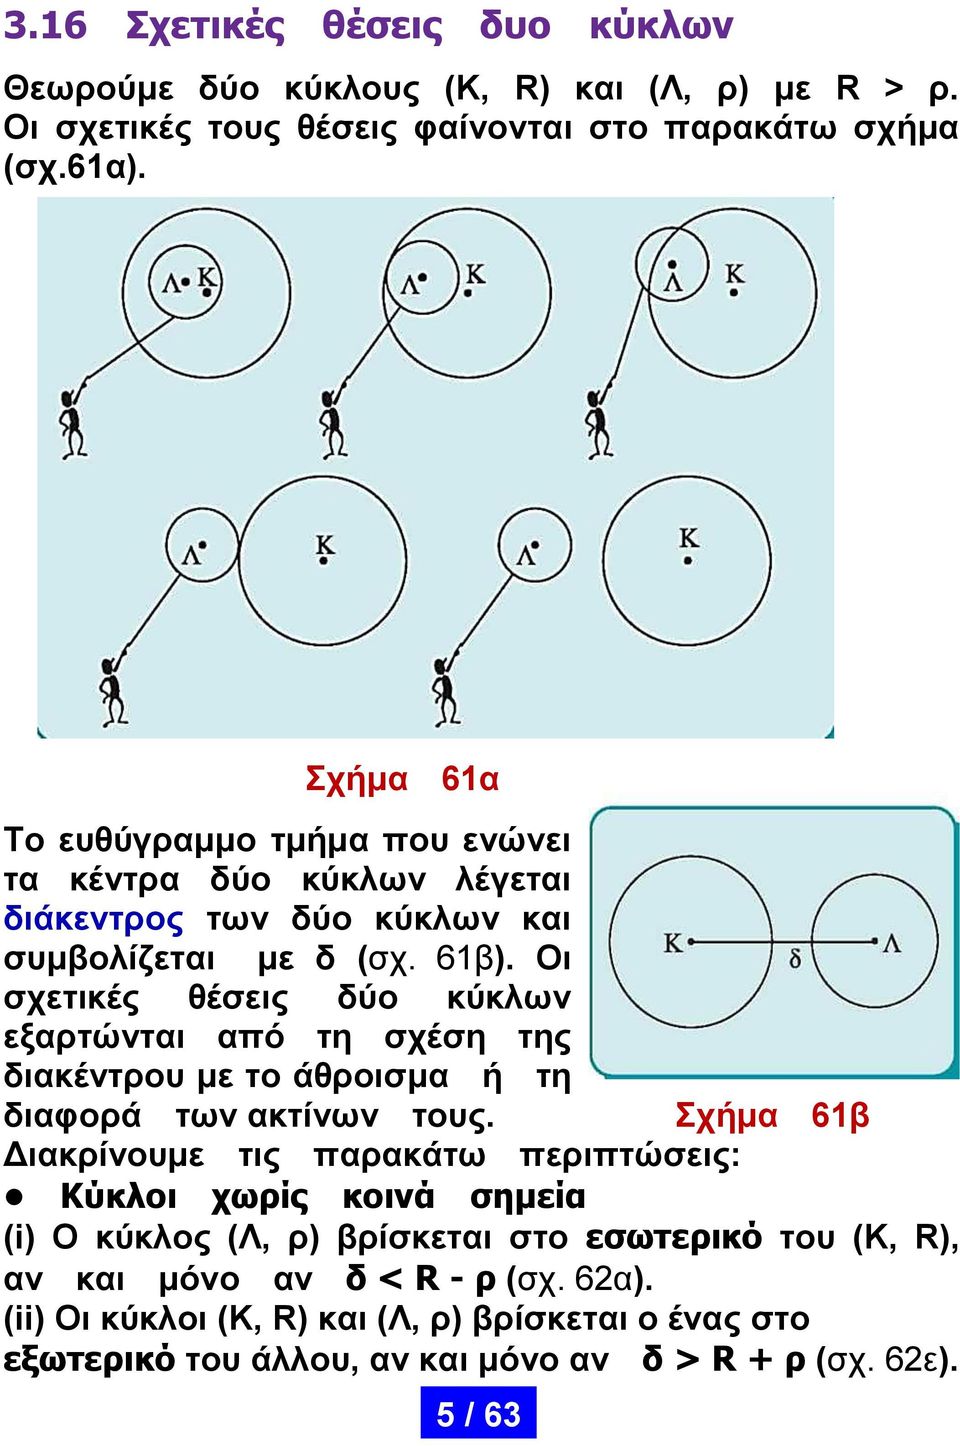 Οι σχετικές θέσεις δύο κύκλων εξαρτώνται από τη σχέση της διακέντρου με το άθροισμα ή τη διαφορά των ακτίνων τους.